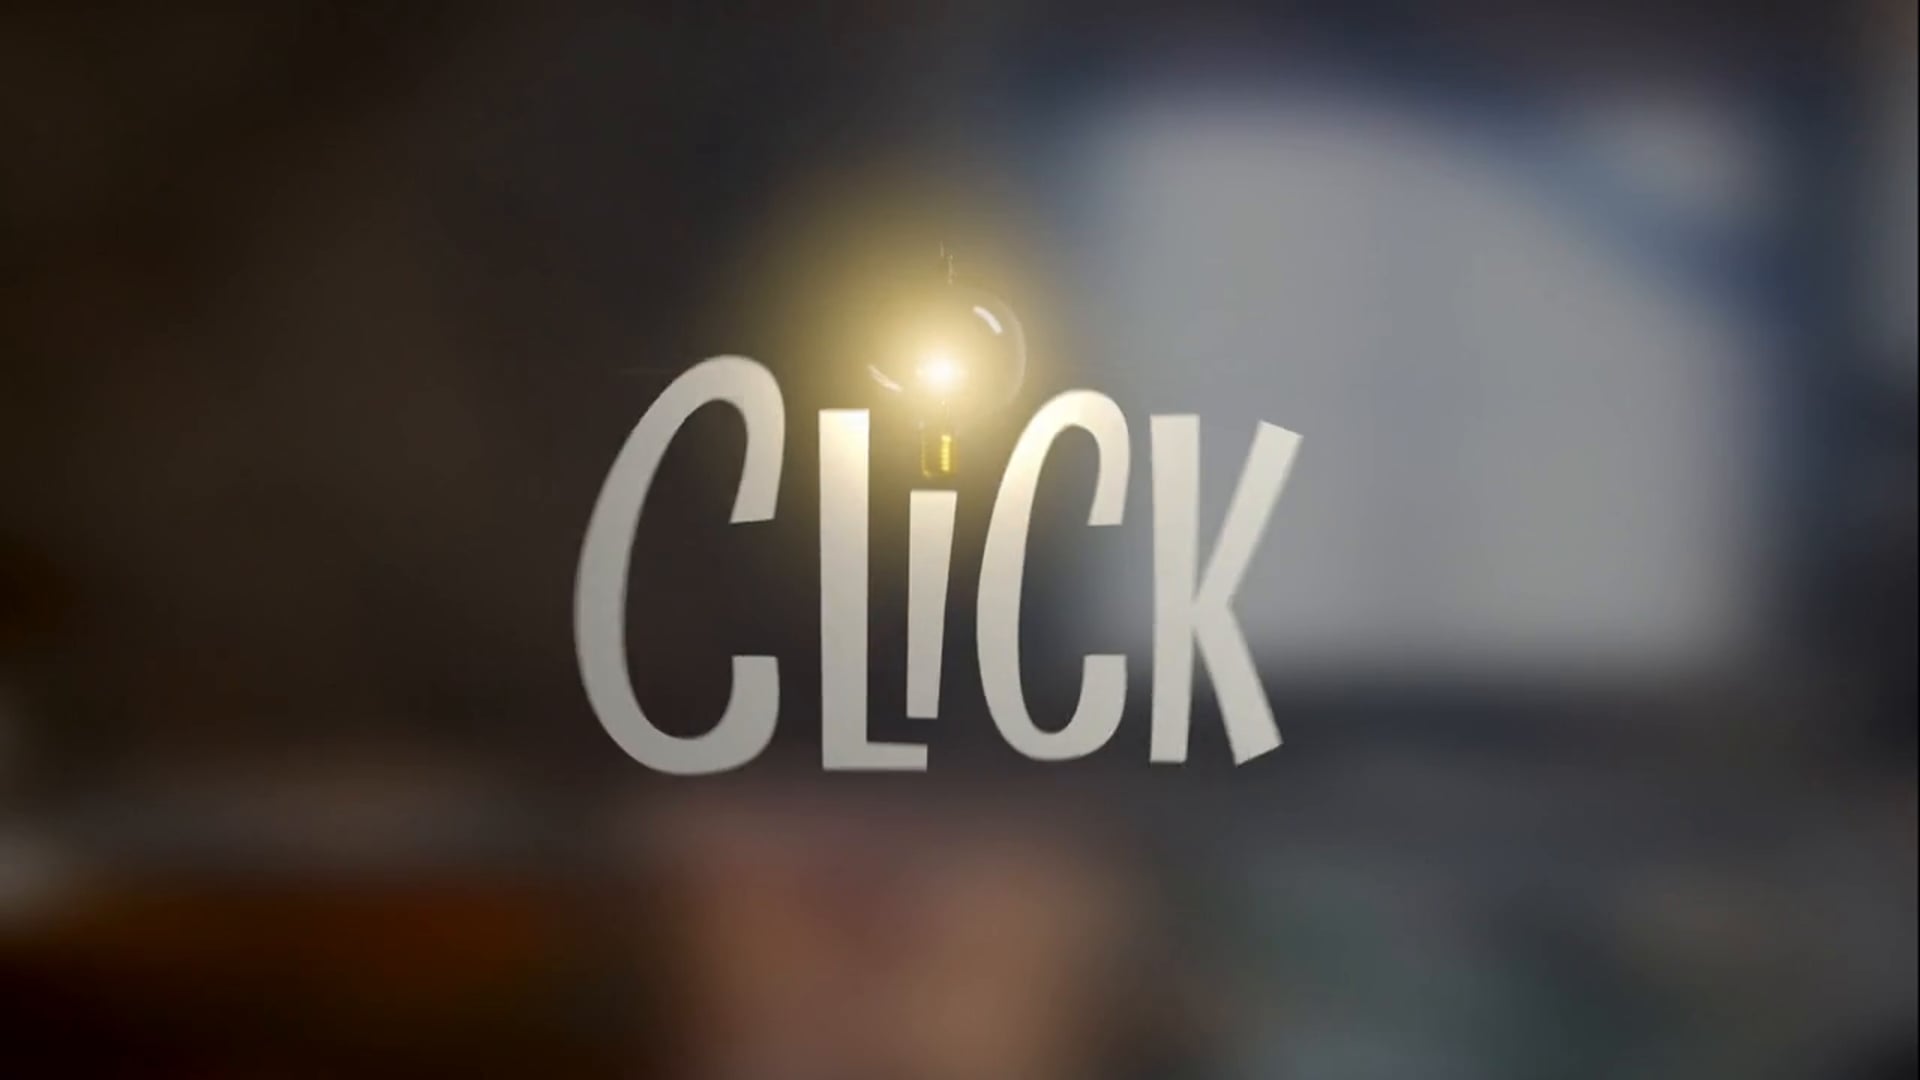 CLICK - Série de TV Infantil - Canal Gloob